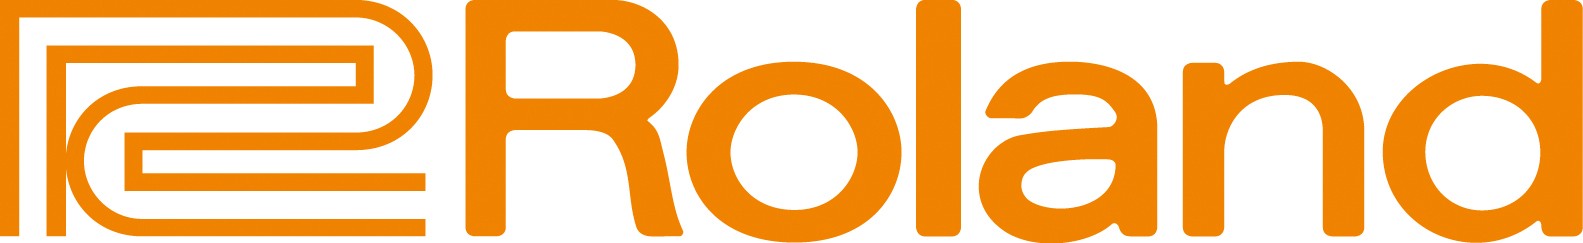 Roland_Corporate_Logo_4c